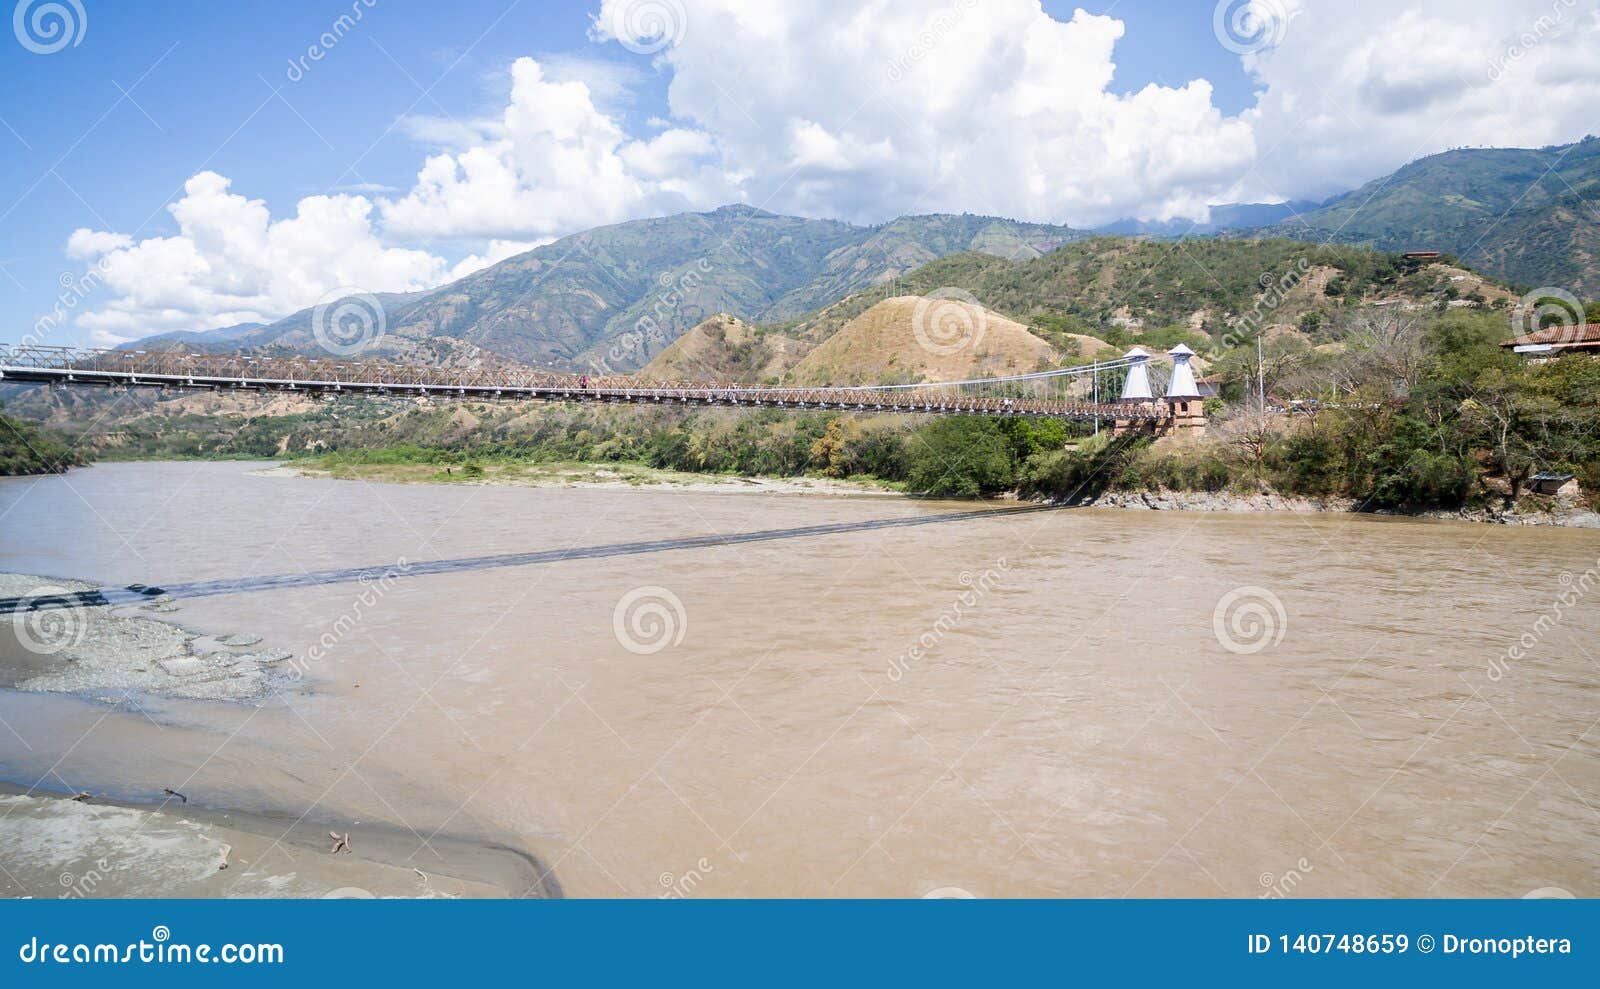 hanging puente de occidente bridge in colombia